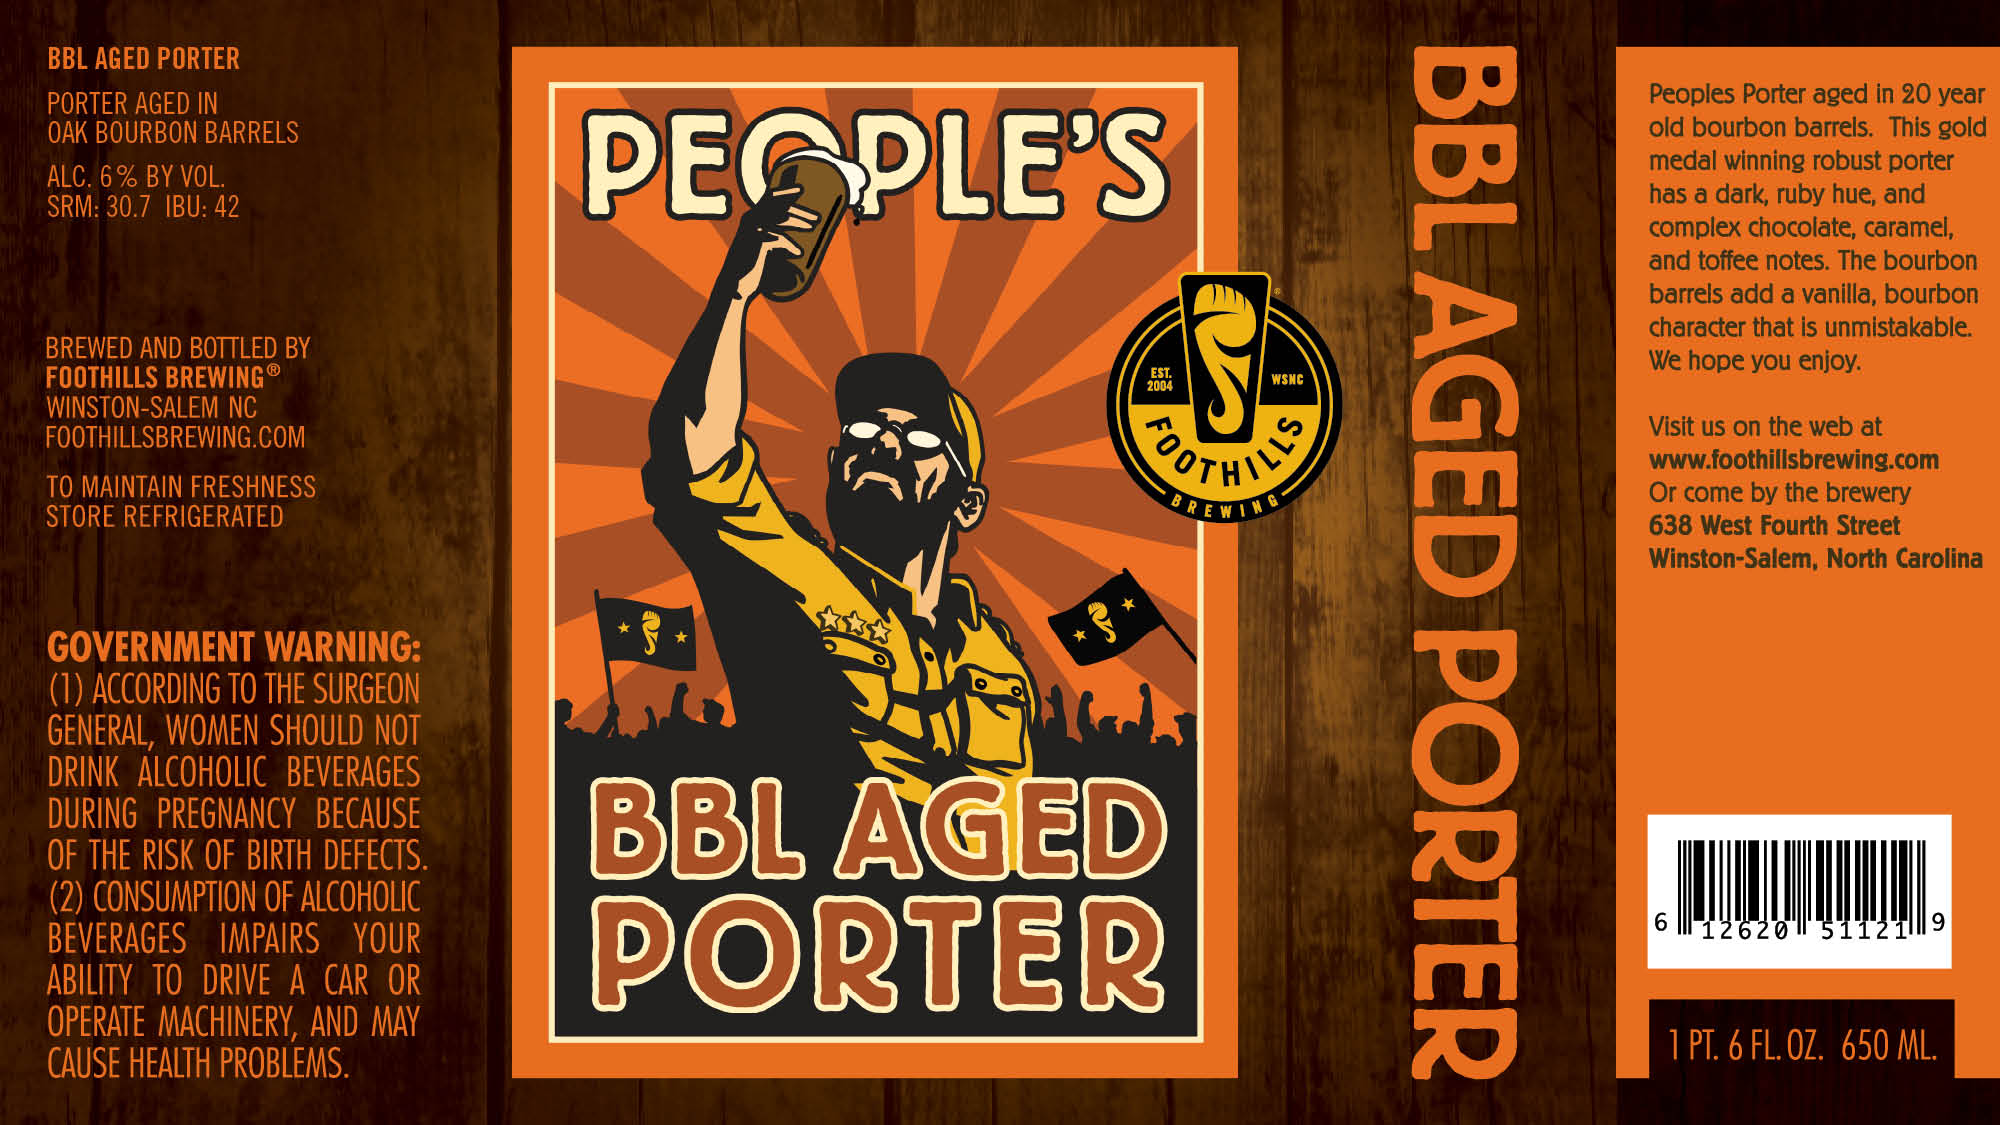 Foothills BBL Aged Porter